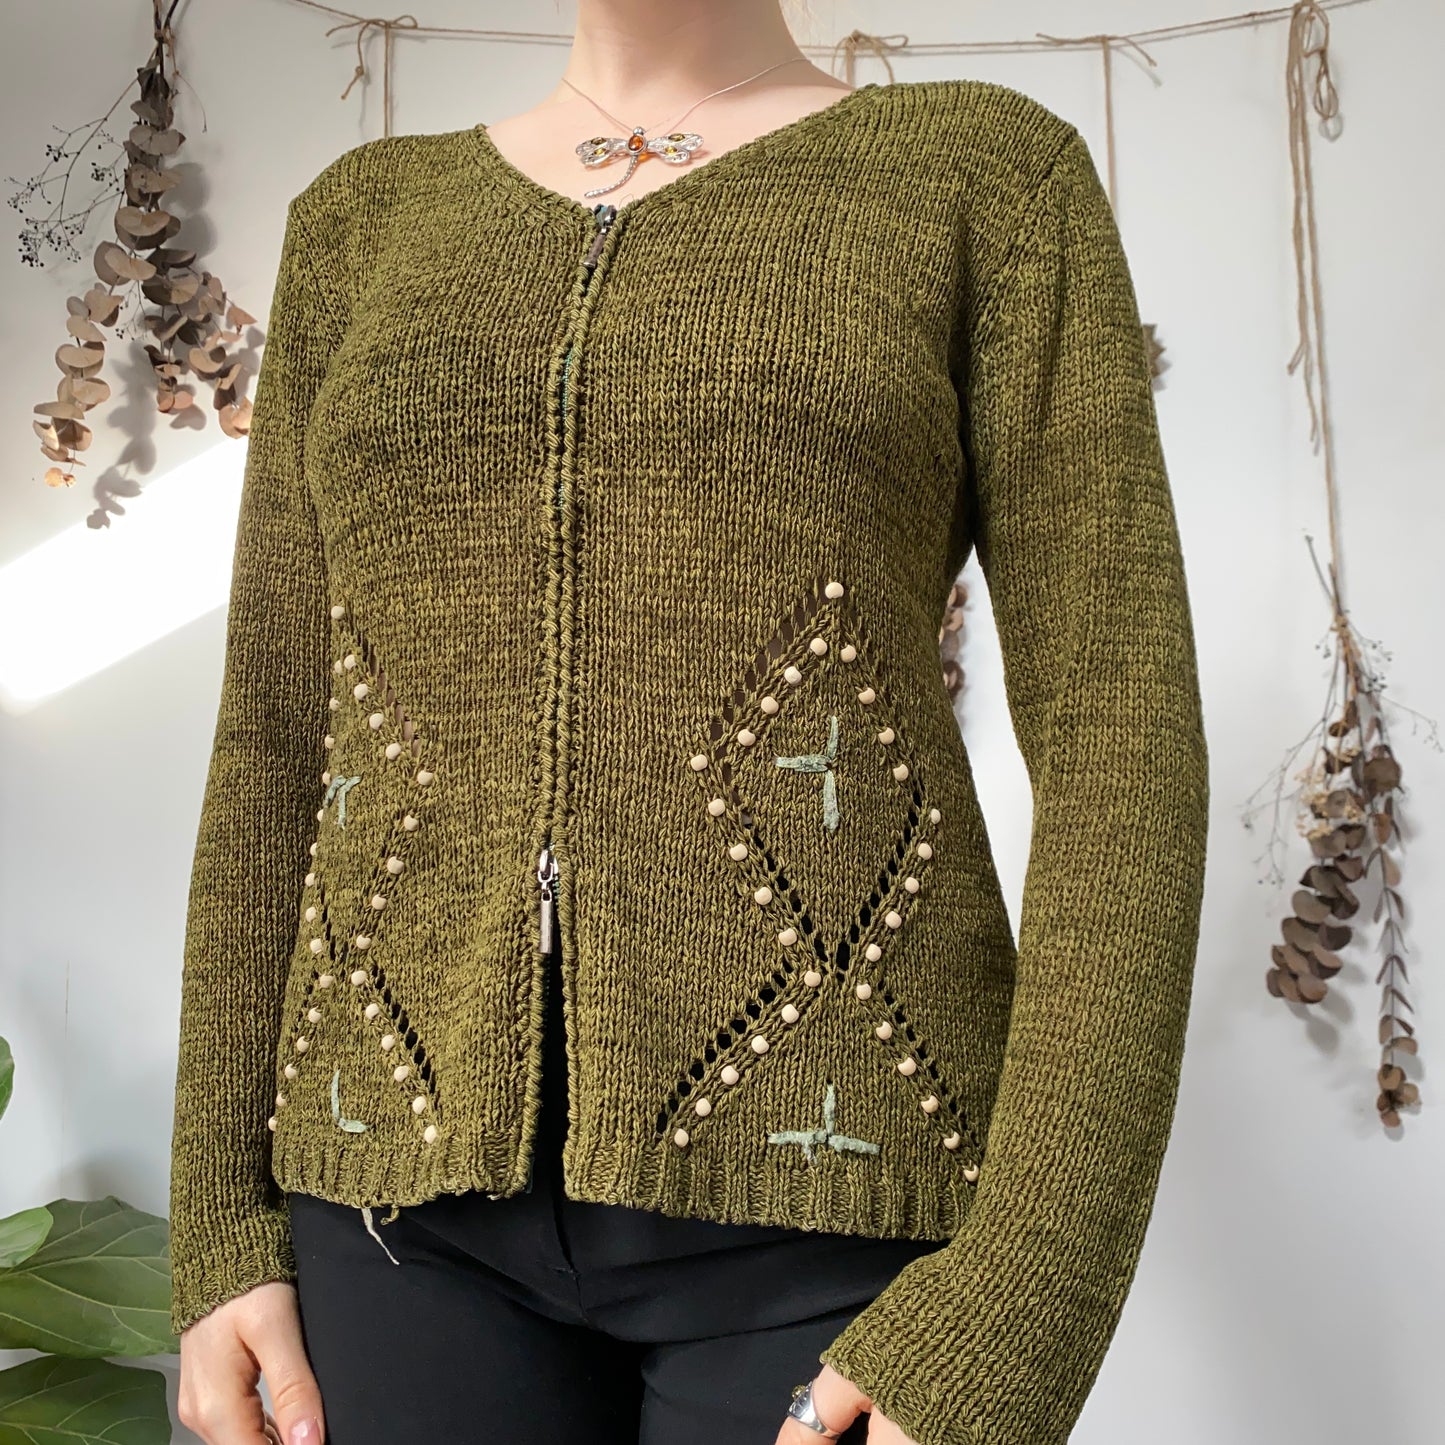 Moss green knit - size M/L